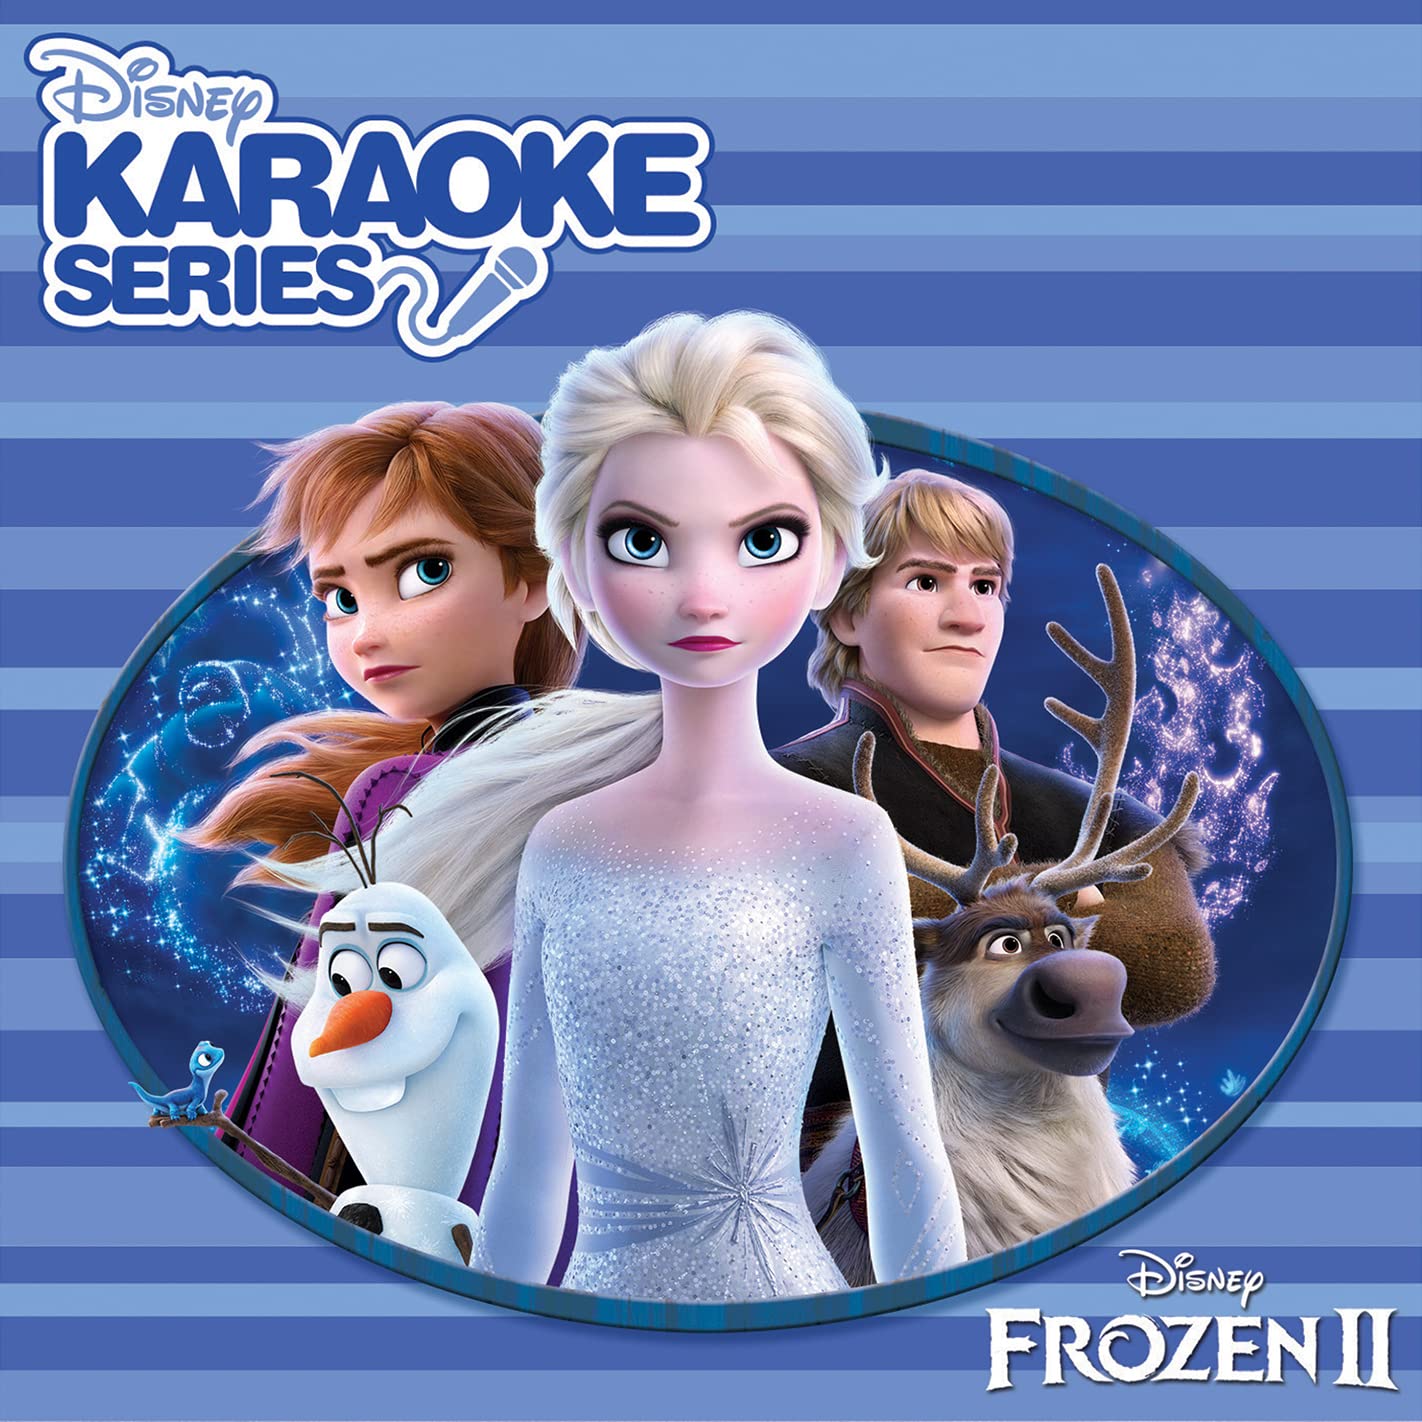 Disney Karaoke Series: Frozen 2 on MovieShack